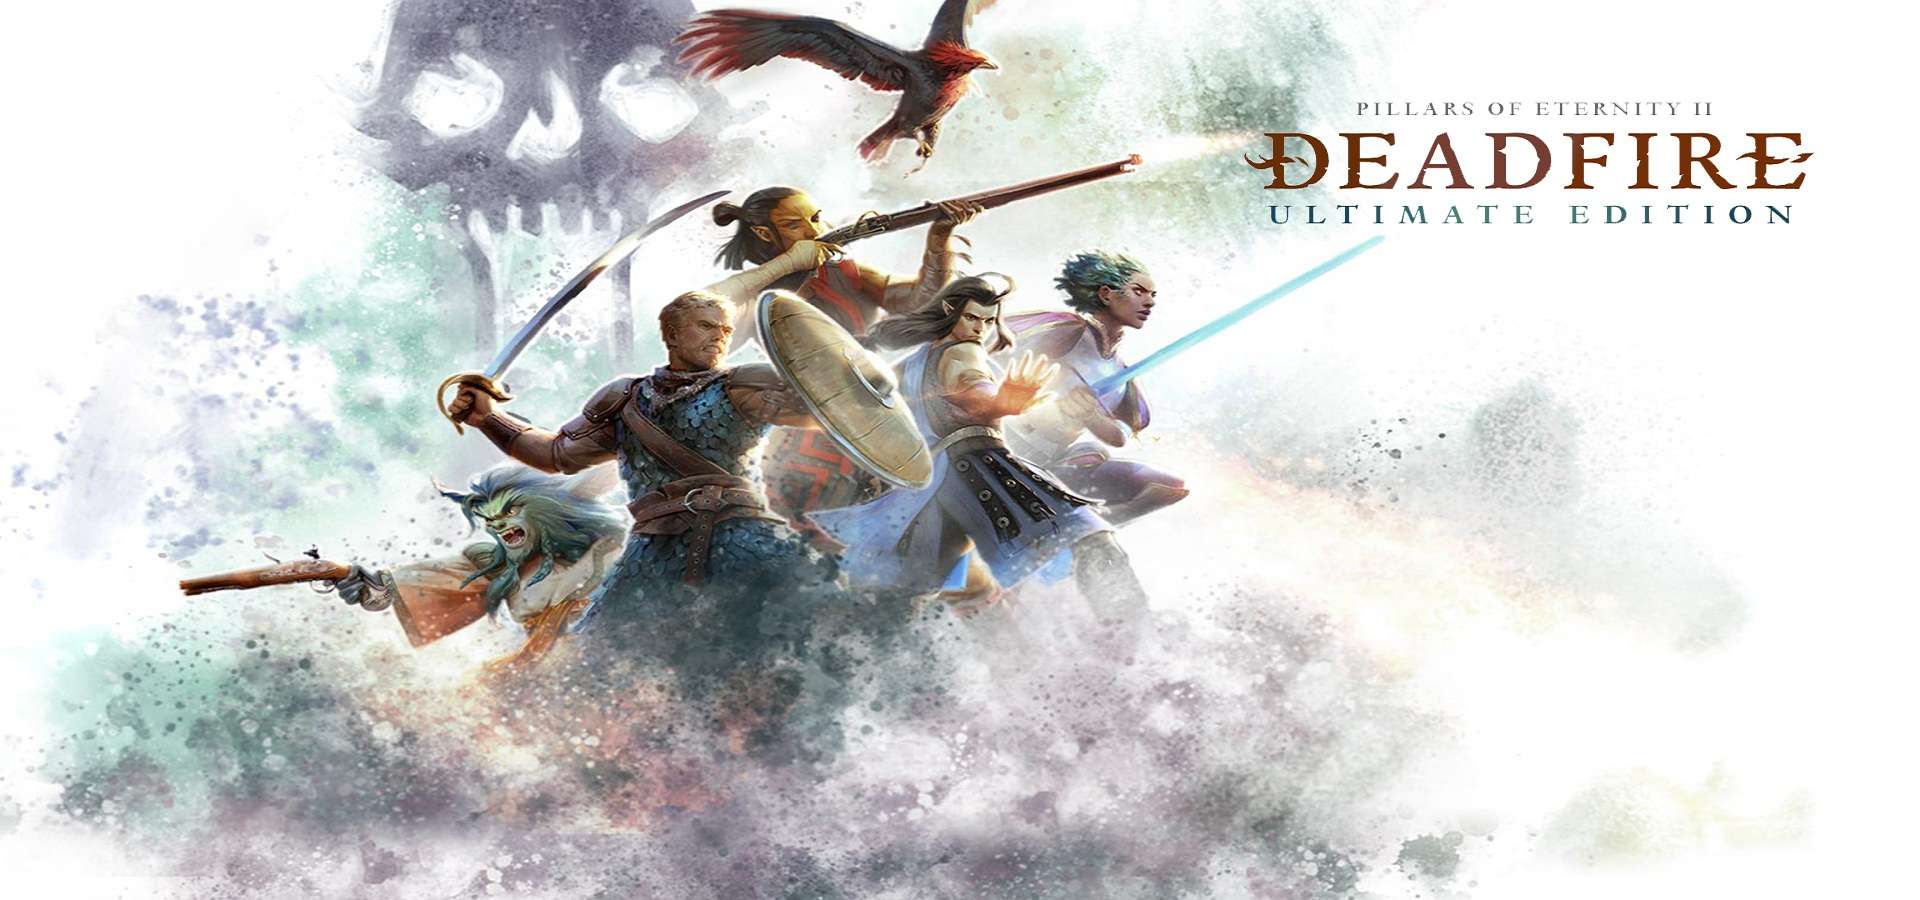 Pillars of Eternity II: Deadfire Ultimate Edition se lanzará el próximo 28 de enero para PS4